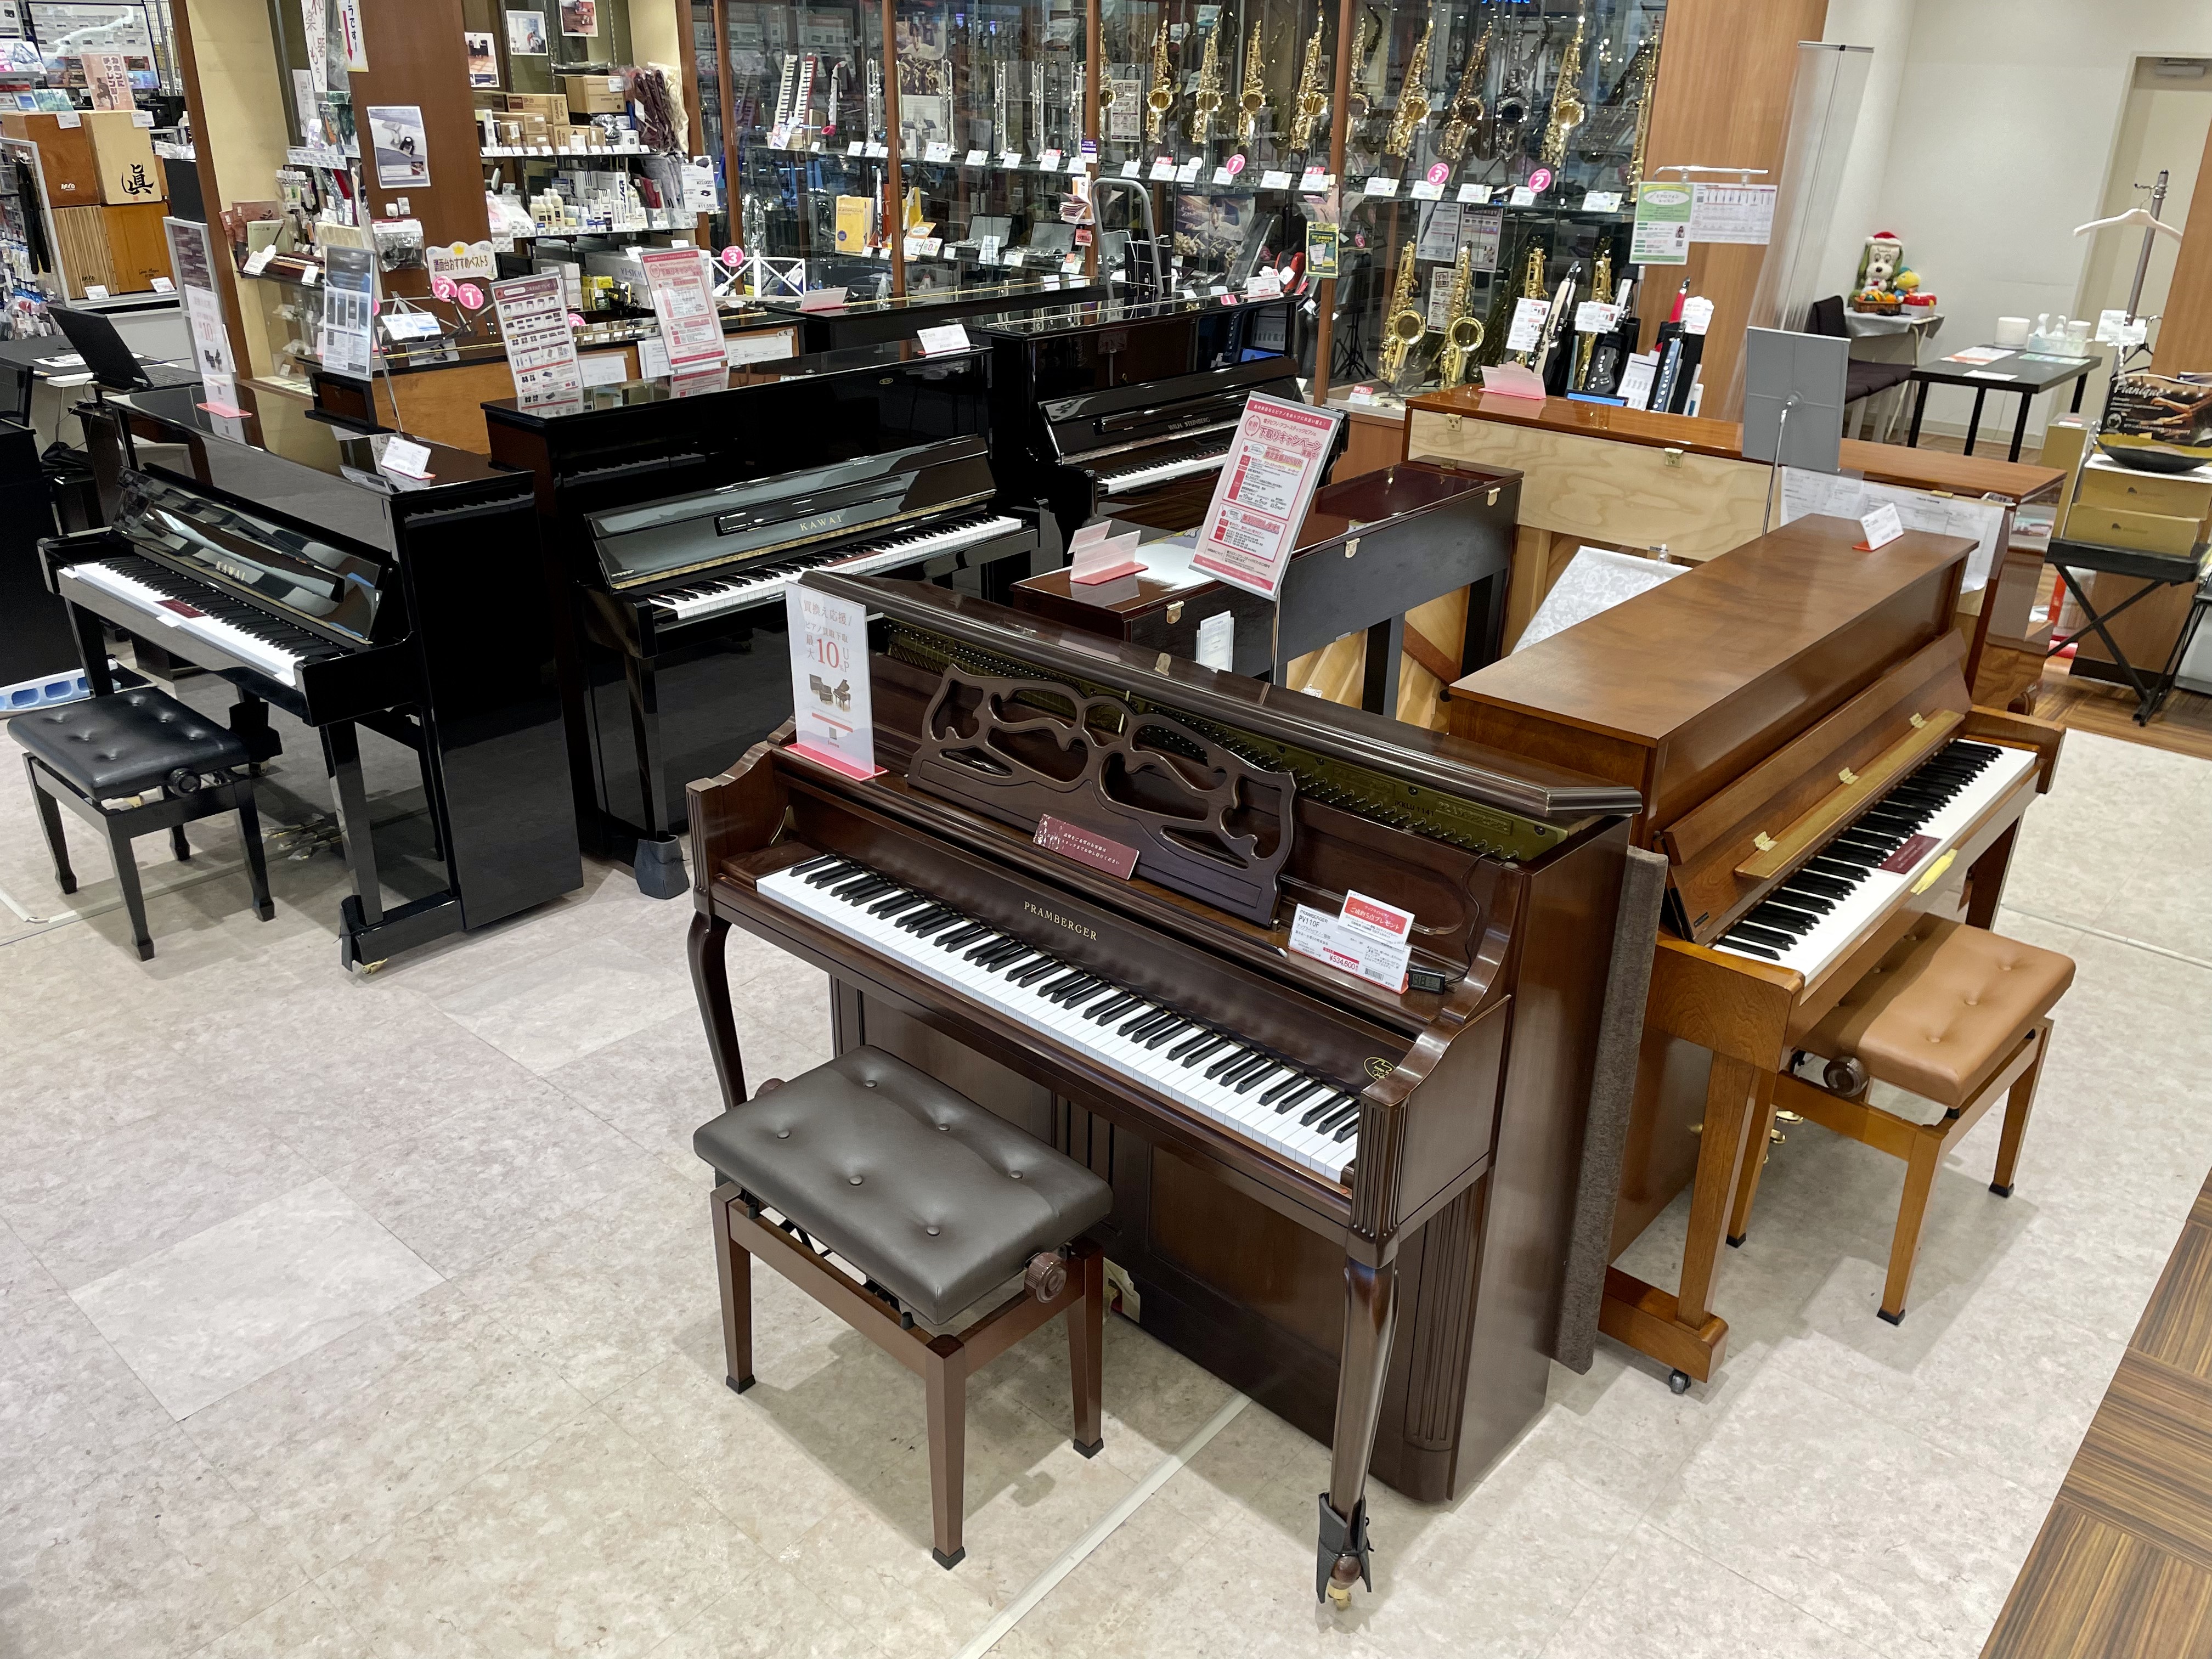 島村楽器イオンモール名取店では、夏のアップライトピアノフェアを開催します。品薄となっている中古商品から新品のアップライトピアノまで多数ご用意して皆様のご来店をお待ちしております。 CONTENTS黒色鏡面アップライトピアノ木目調アップライトピアノご購入特典黒色鏡面アップライトピアノ ピアノと言えば存 […]